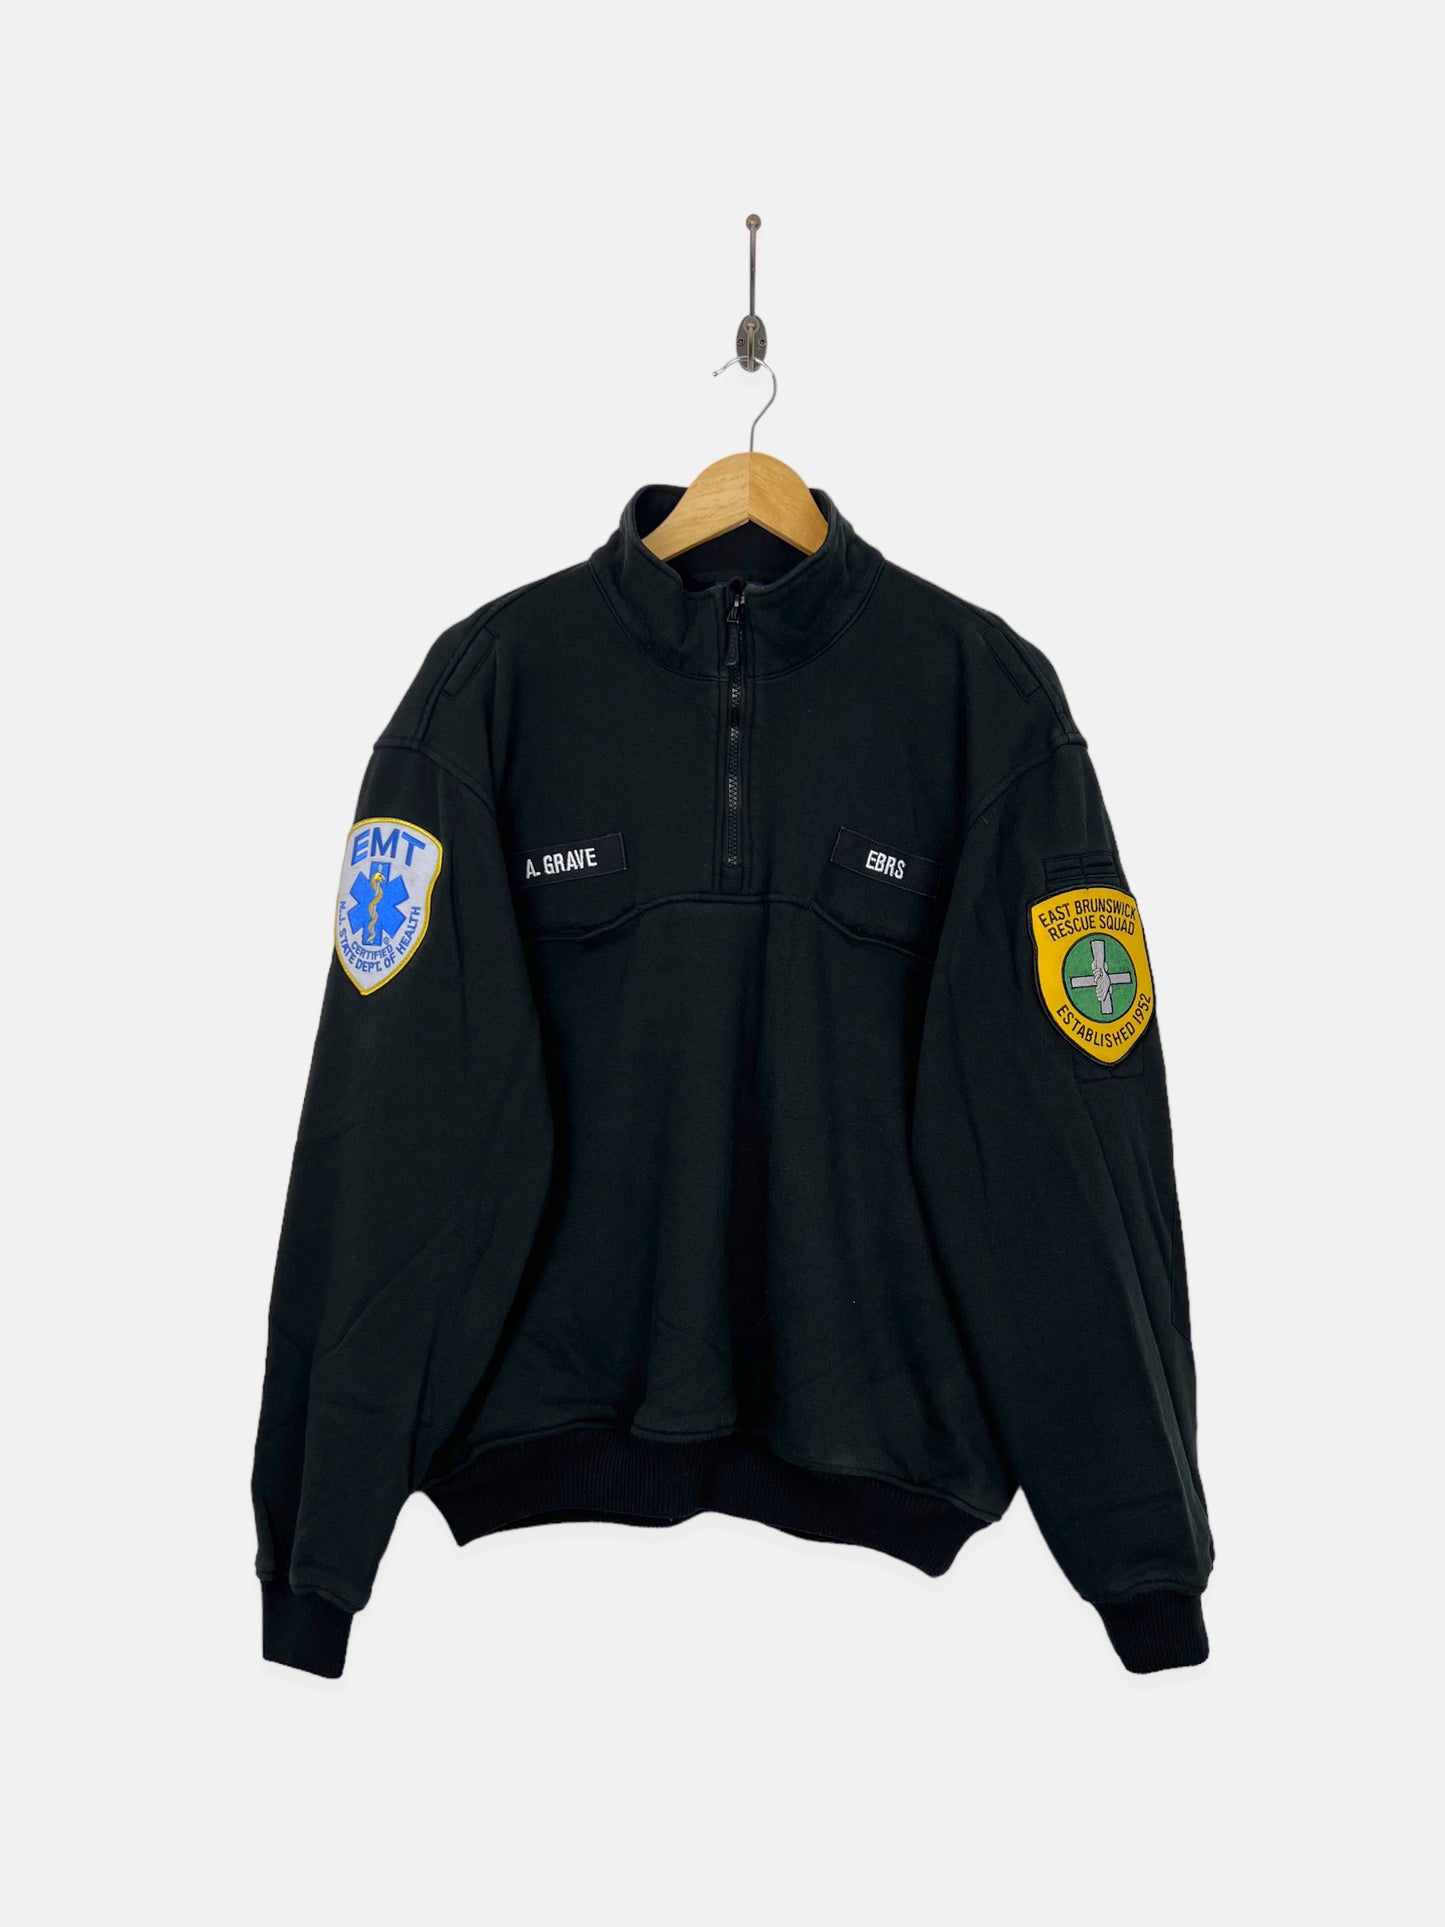 90's East Brunswick Rescue Squad Embroidered Vintage Quarterzip Sweatshirt Size M-L